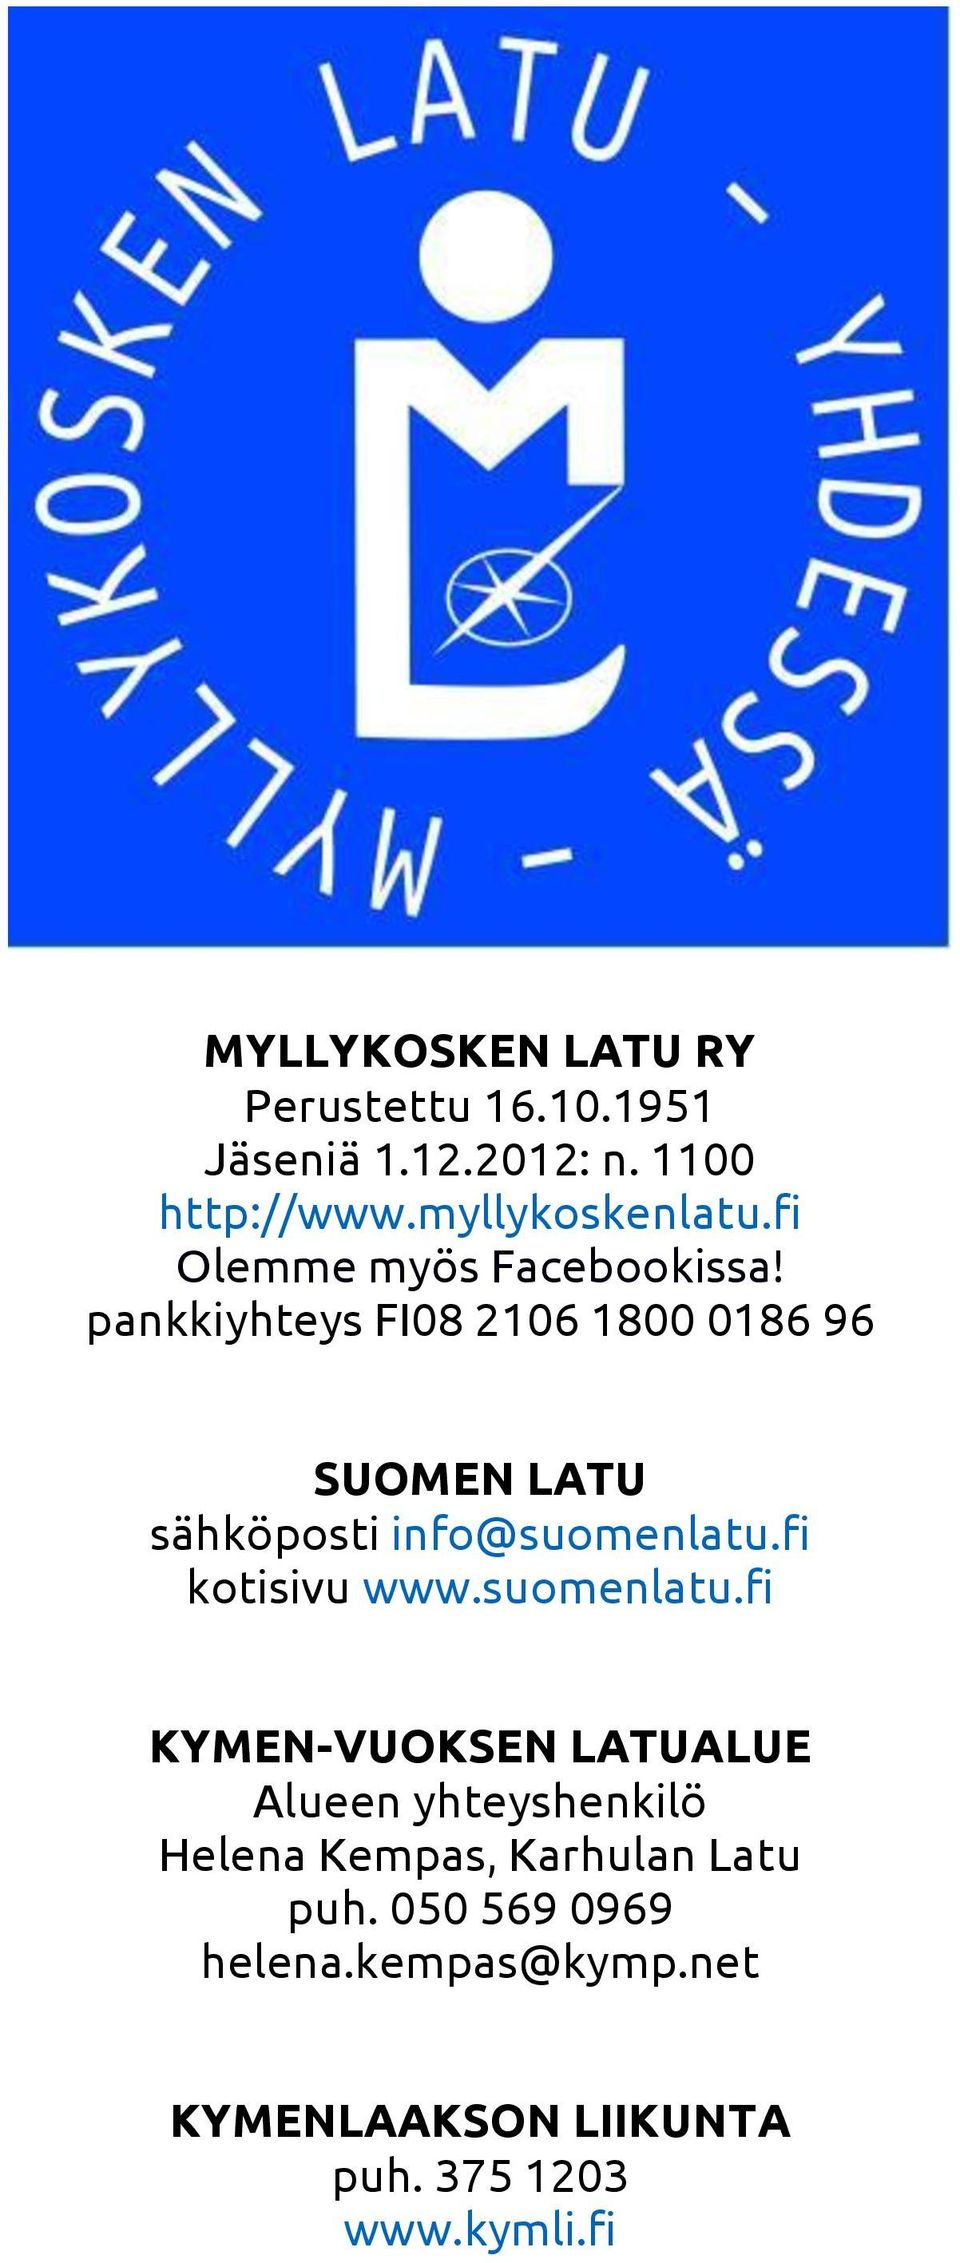 pankkiyhteys FI08 2106 1800 0186 96 SUOMEN LATU sähköposti info@suomenlatu.fi kotisivu www.